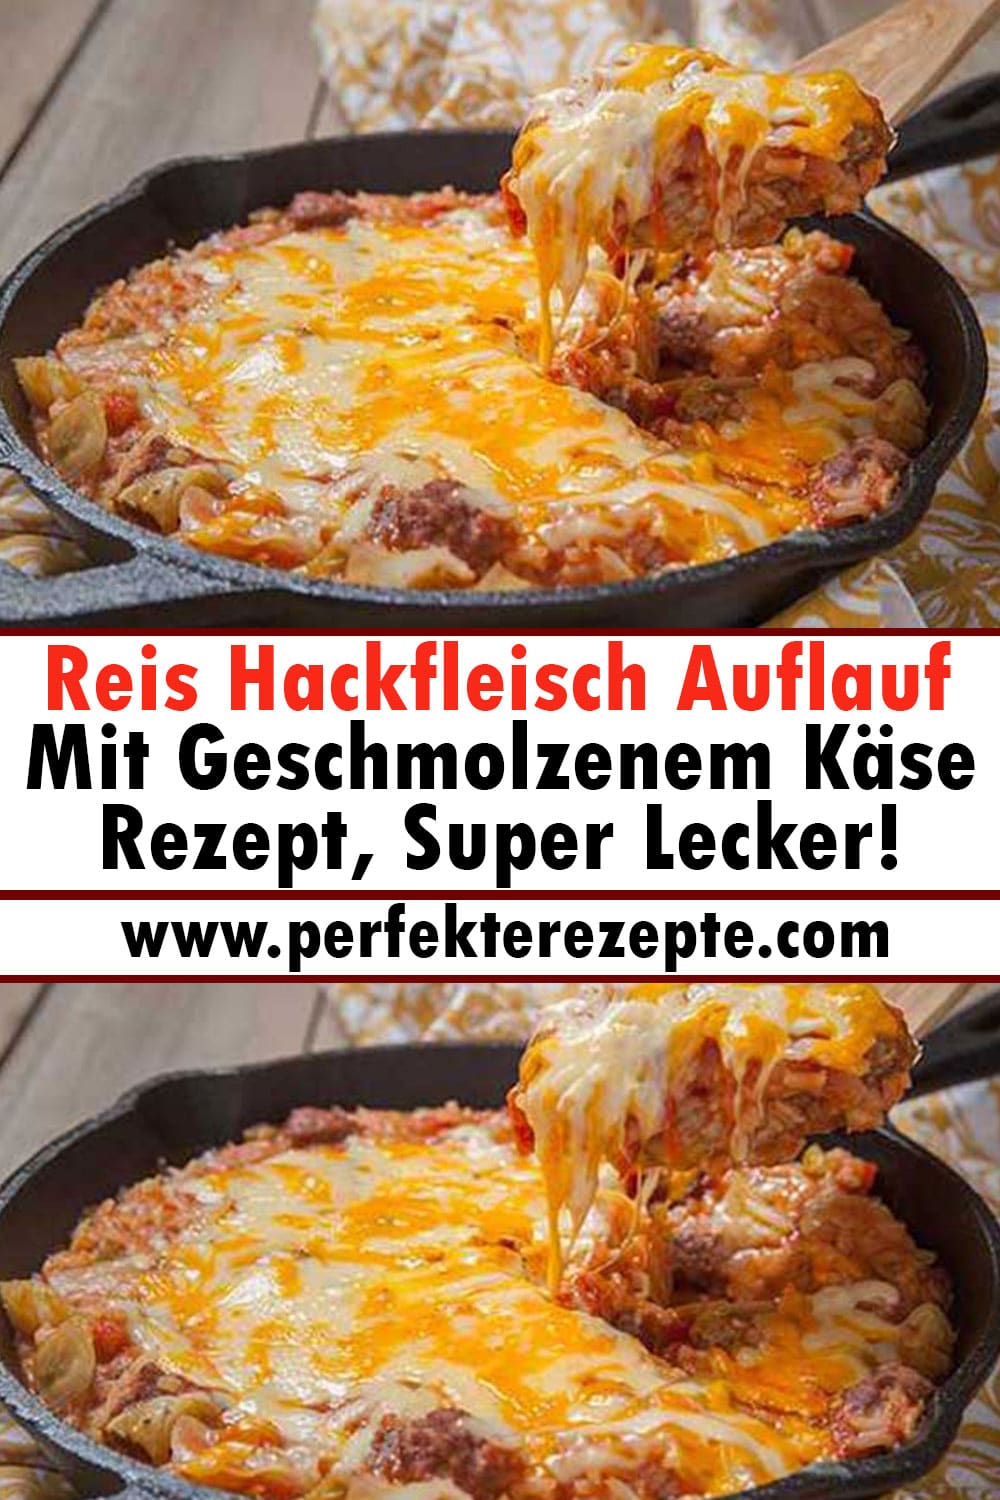 Reis Hackfleisch Auflauf Mit Geschmolzenem Käse Rezept, Super Lecker!